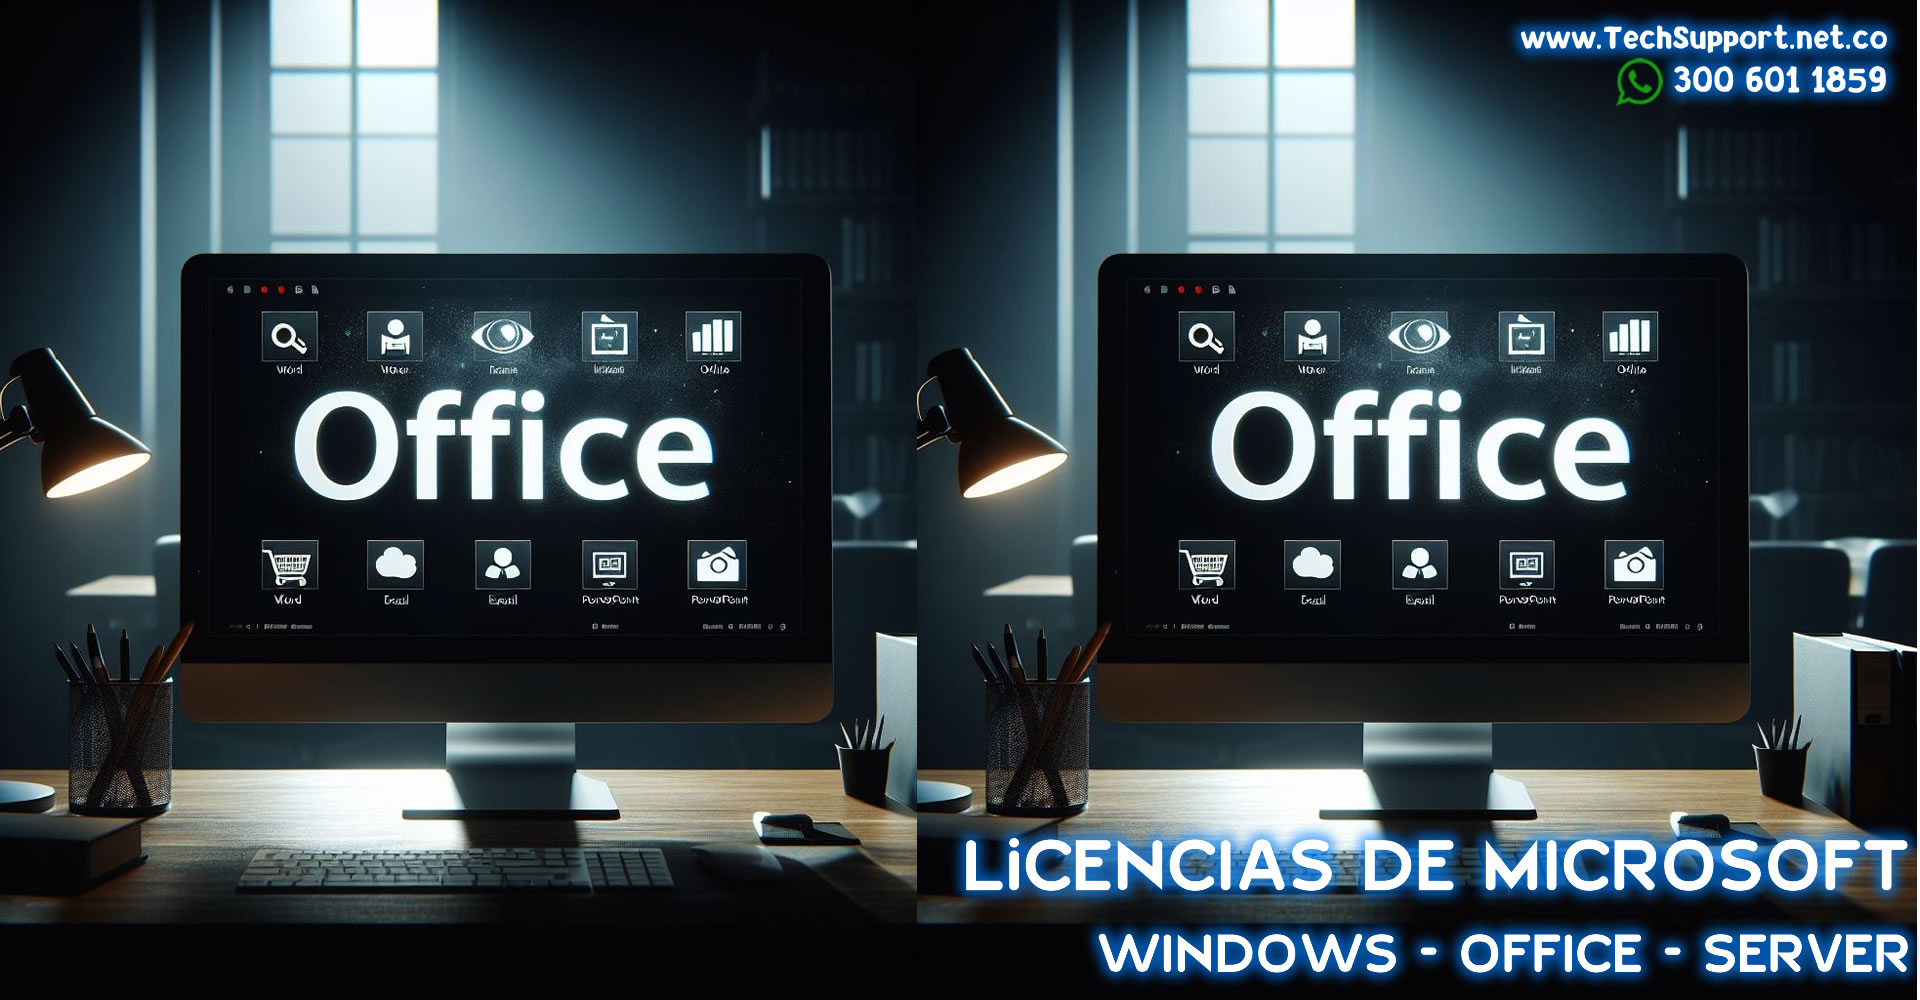 Comprar Licencia Office 365 Colombia